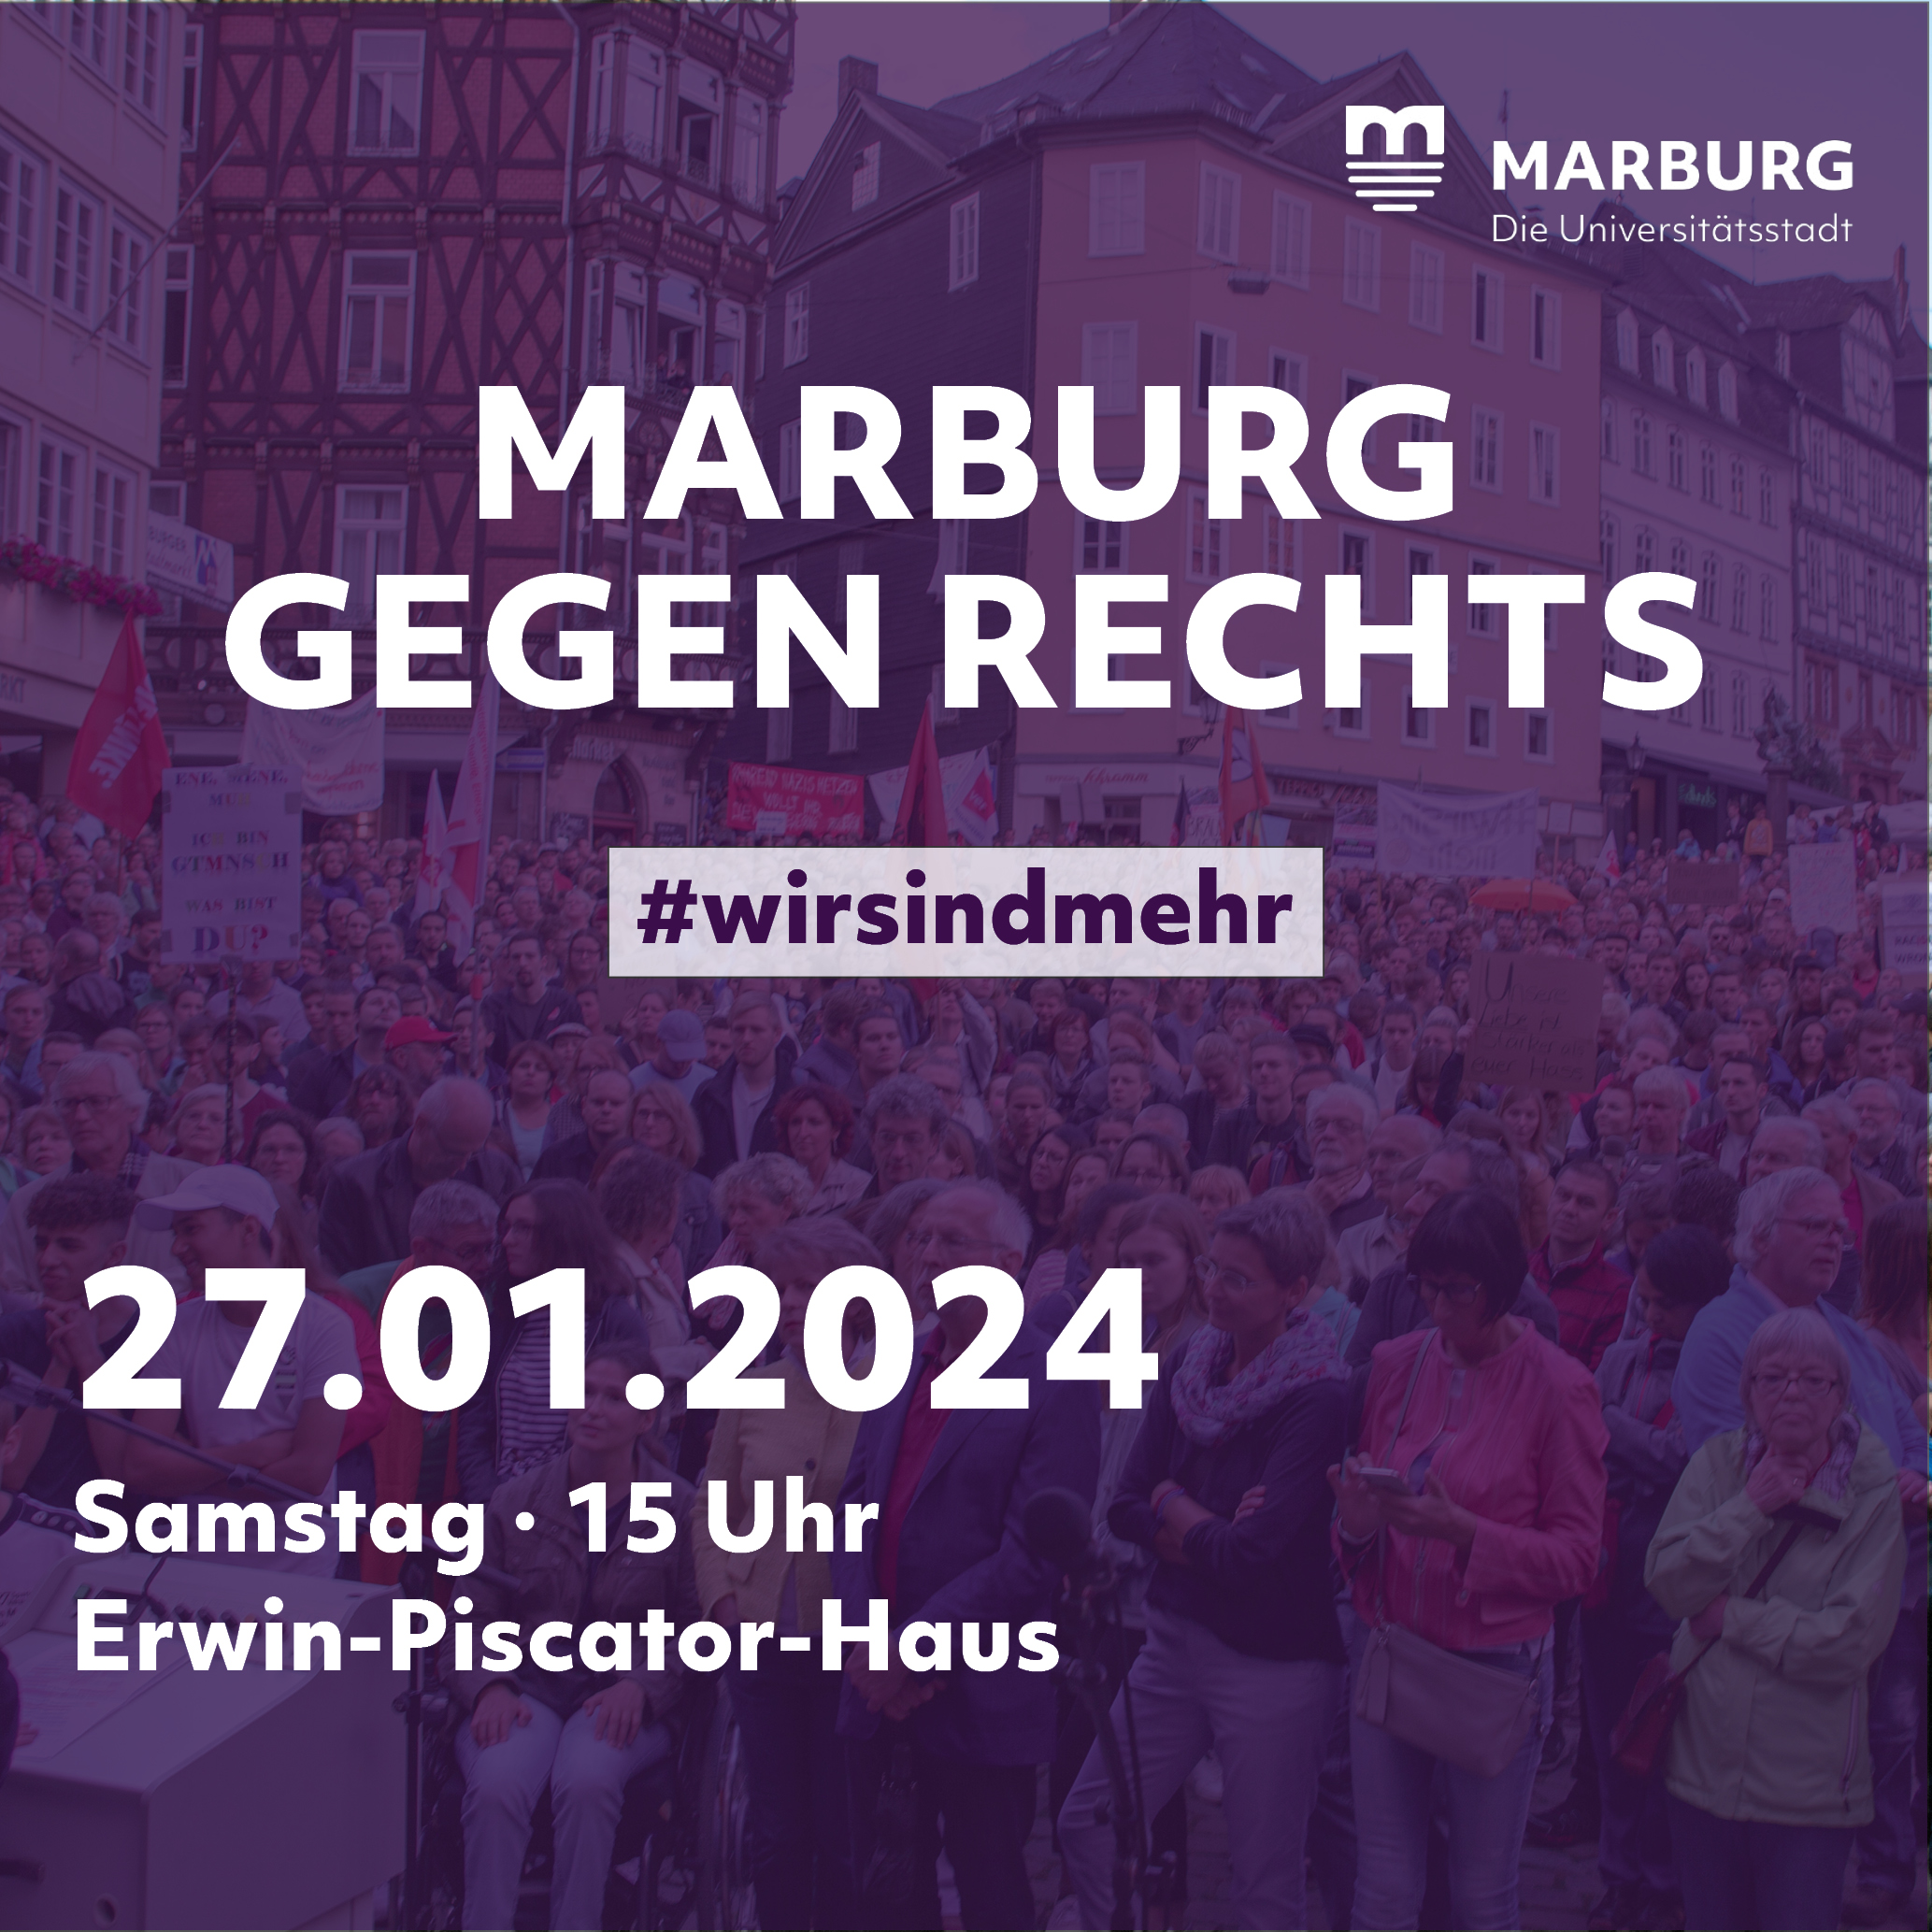 Marburg gegen rechts am 27.1.2024 um 15 Uhr